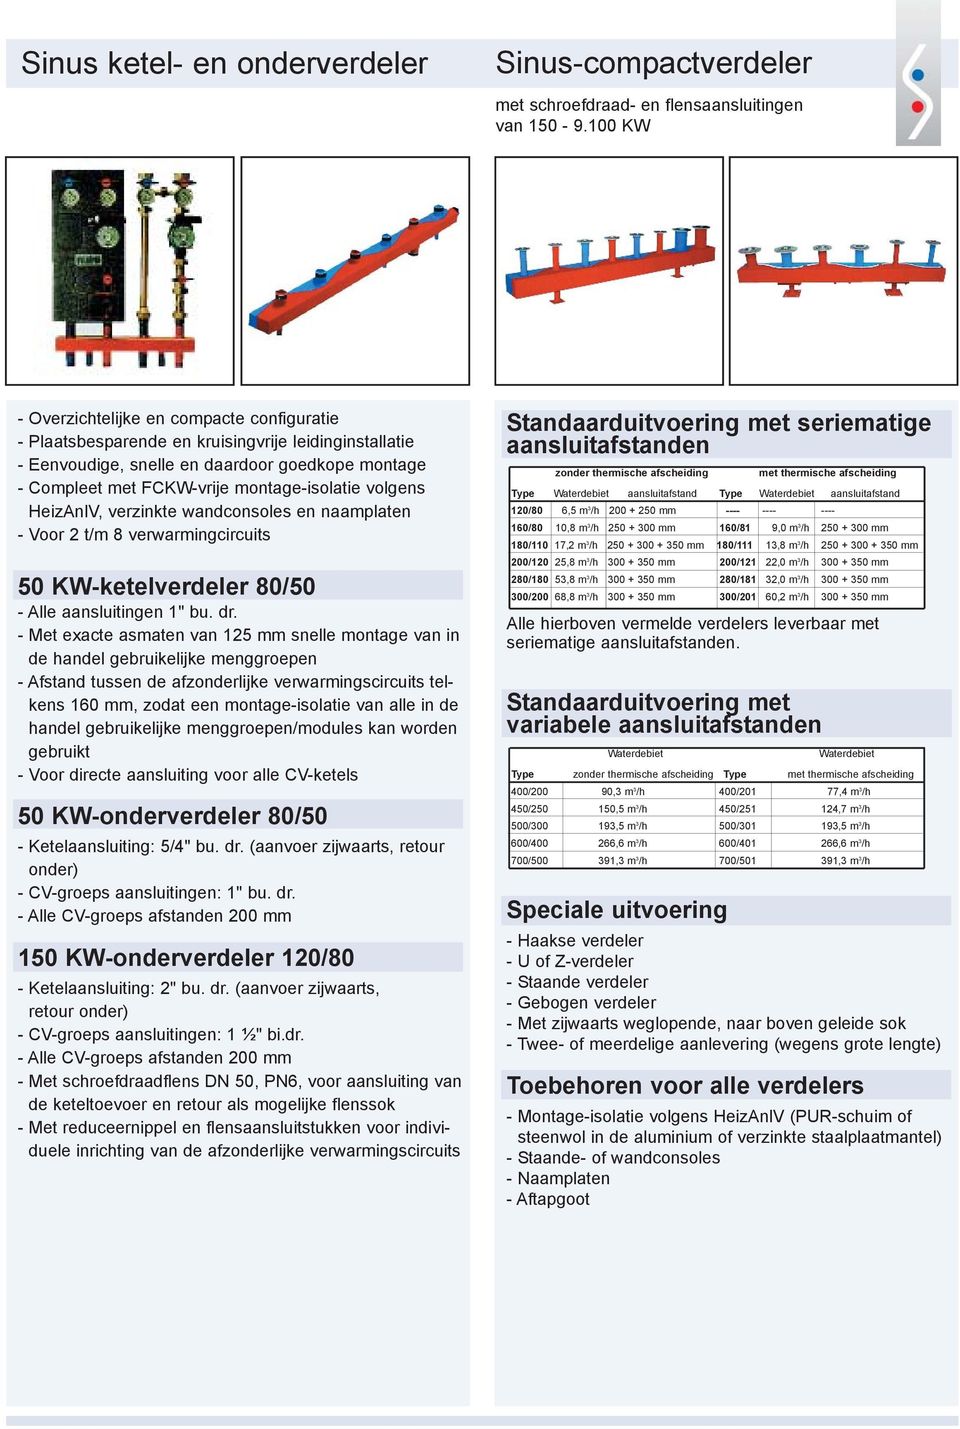 volgens HeizAnlV, verzinkte wandconsoles en naamplaten - Voor 2 t/m 8 verwarmingcircuits 50 KW-ketelverdeler 80/50 - Alle aansluitingen 1" bu. dr.